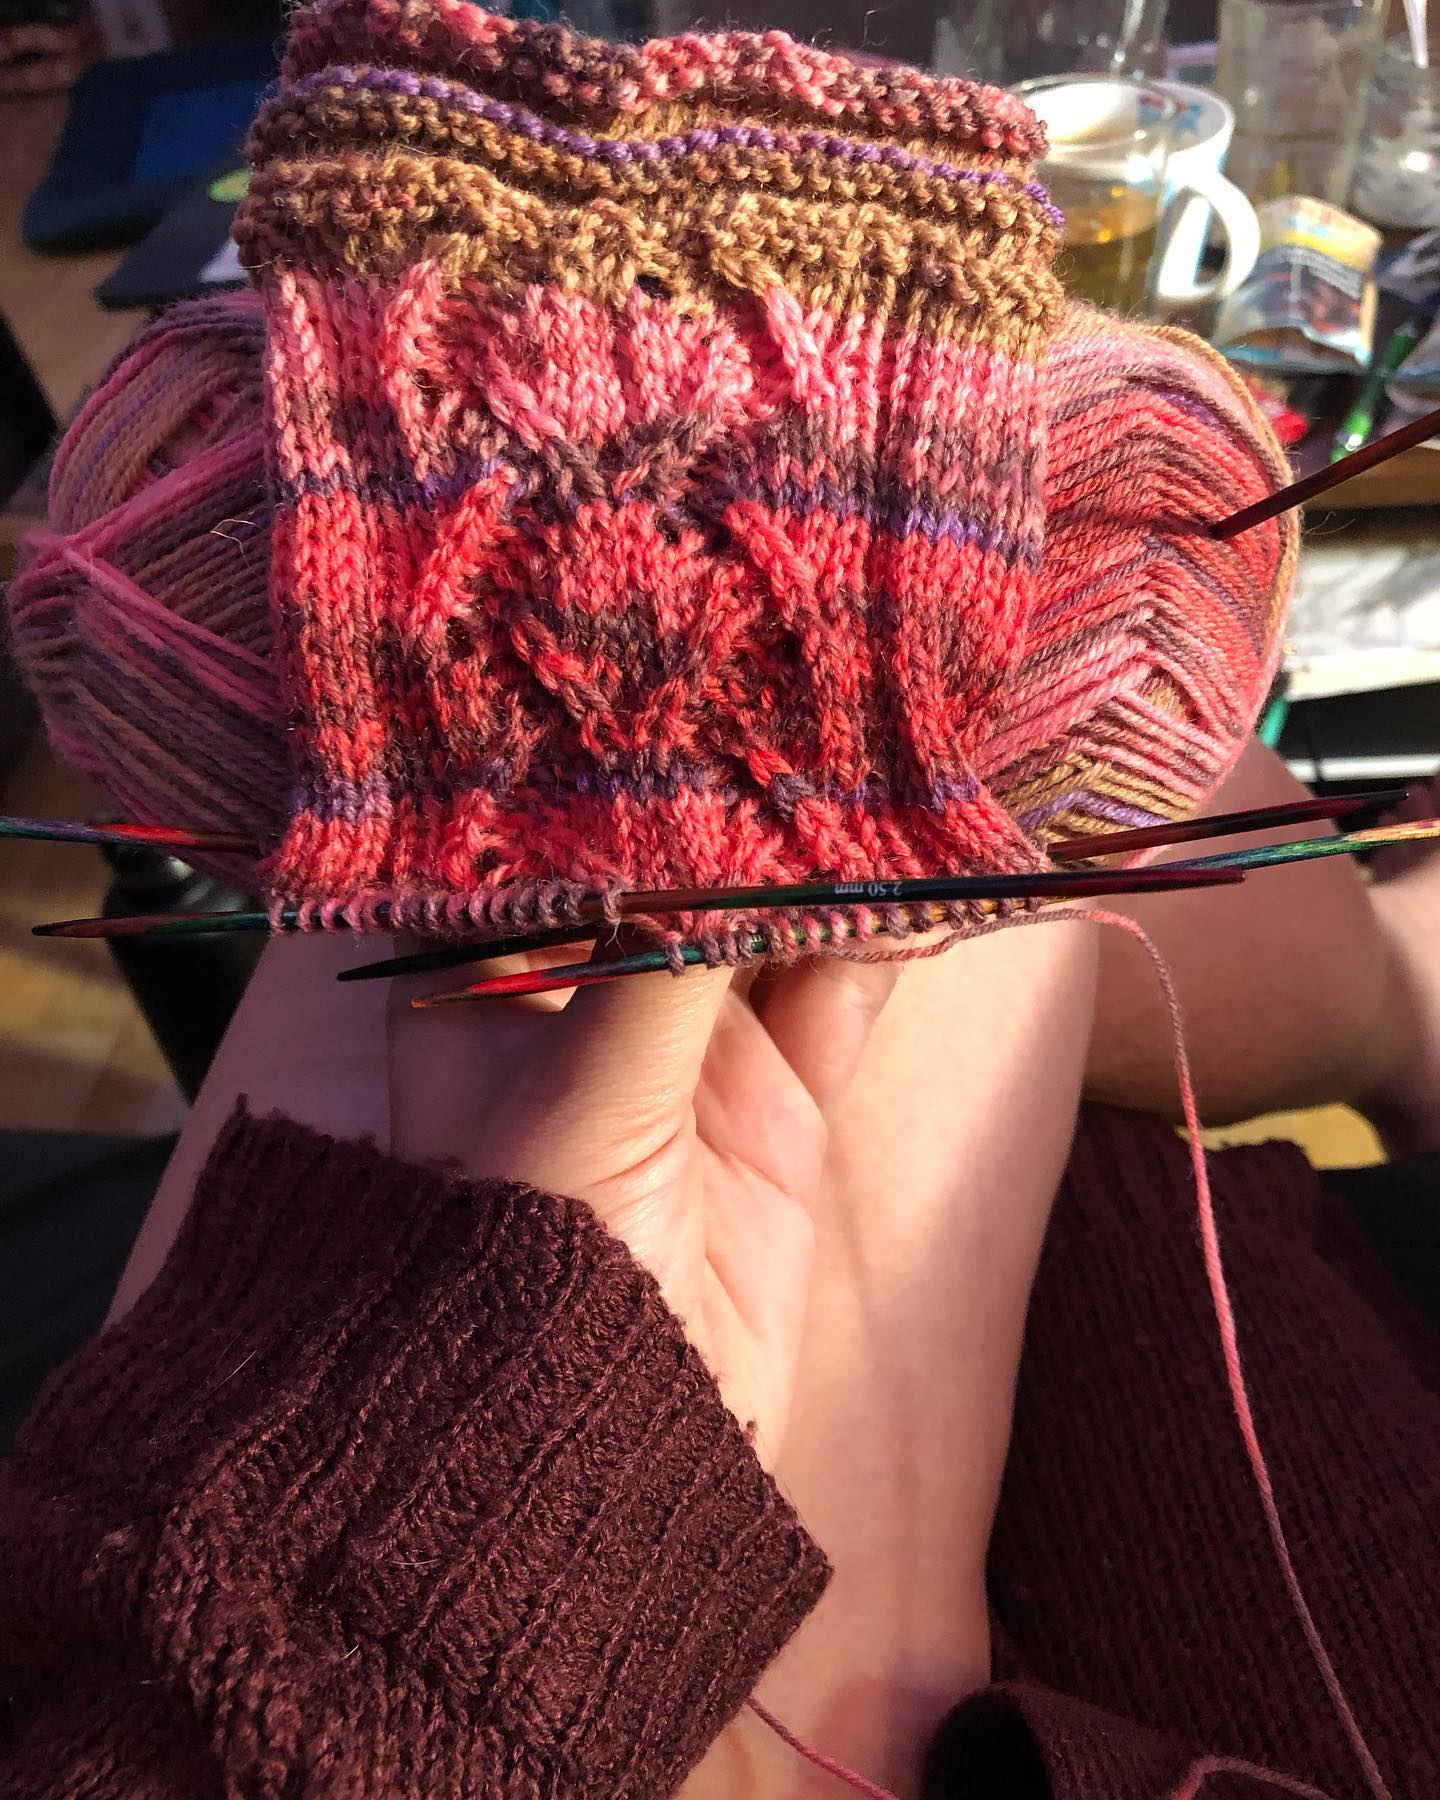 Noch ein paar auf Wunsch 
Ich hoffe ihr gefällt das Muster auch so gut wie mir 😊
#knitting #knittingsocks #sockensonntag #knittinglove #knittingsocksoninstagram #strickenmachtglücklich #stricken #strickliebe #sockenstricken #sockenstrickengehtimmer #nadelspiel #sauerland #menden #strickenistwiezaubernkönnen #opalabo #stricksüchtig